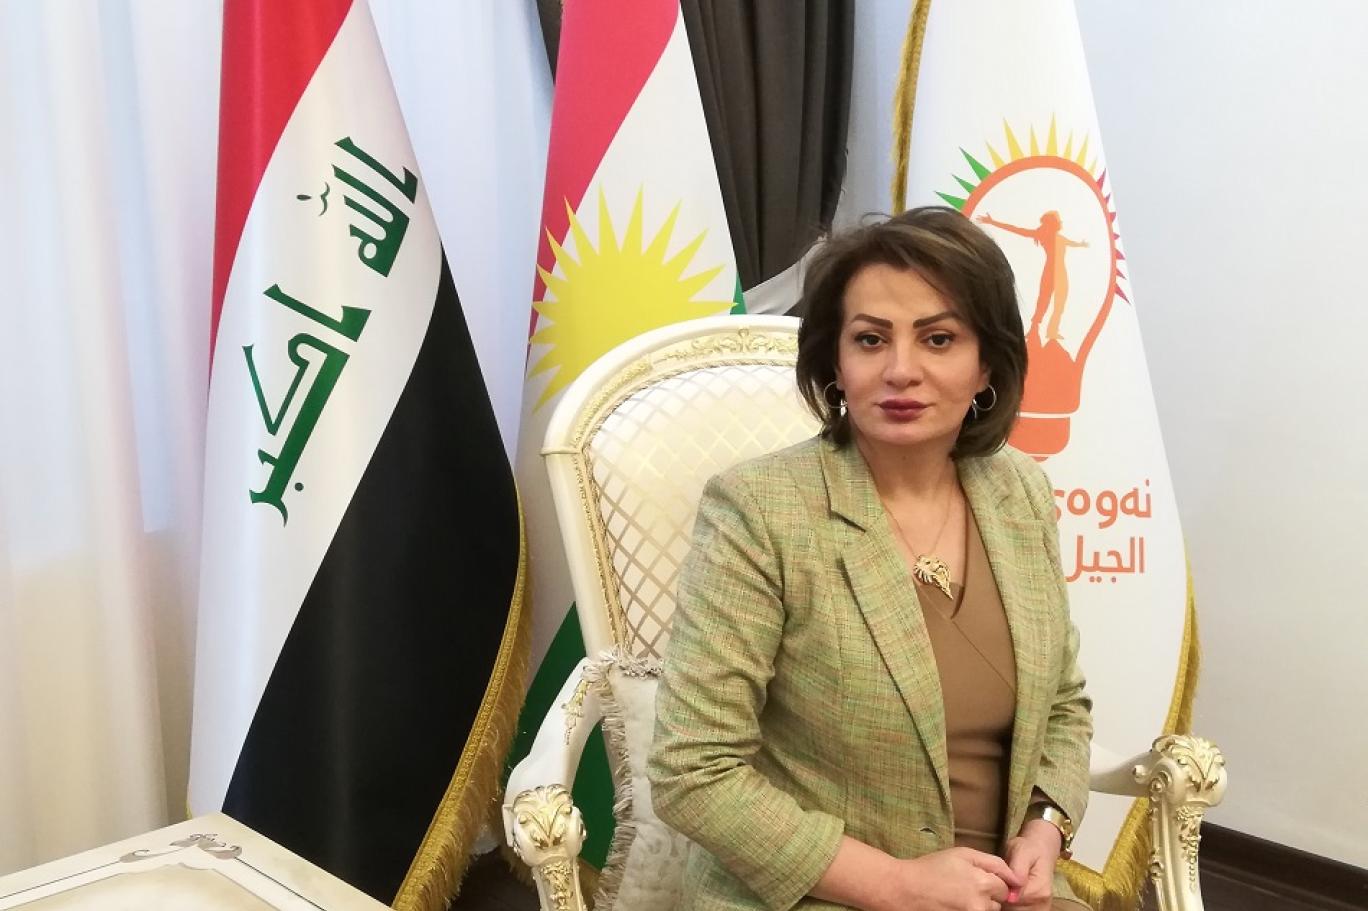 الجيل الجديد تعلن موقفها من جلسة البرلمان العراقي: استفزازية